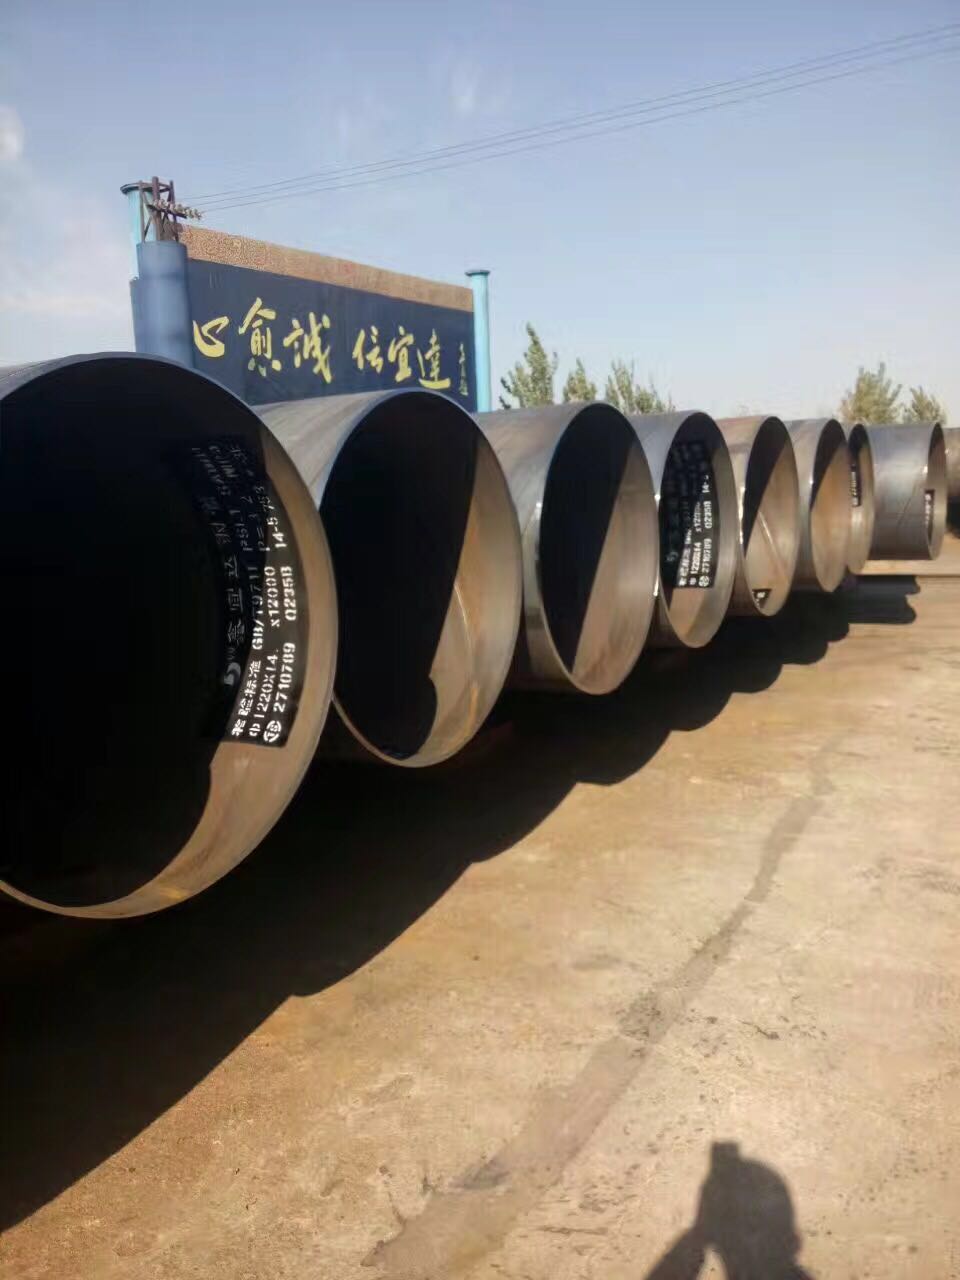 國標螺旋鋼管|螺旋鋼管系列-滄州市鑫宜達鋼管集團股份有限公司.